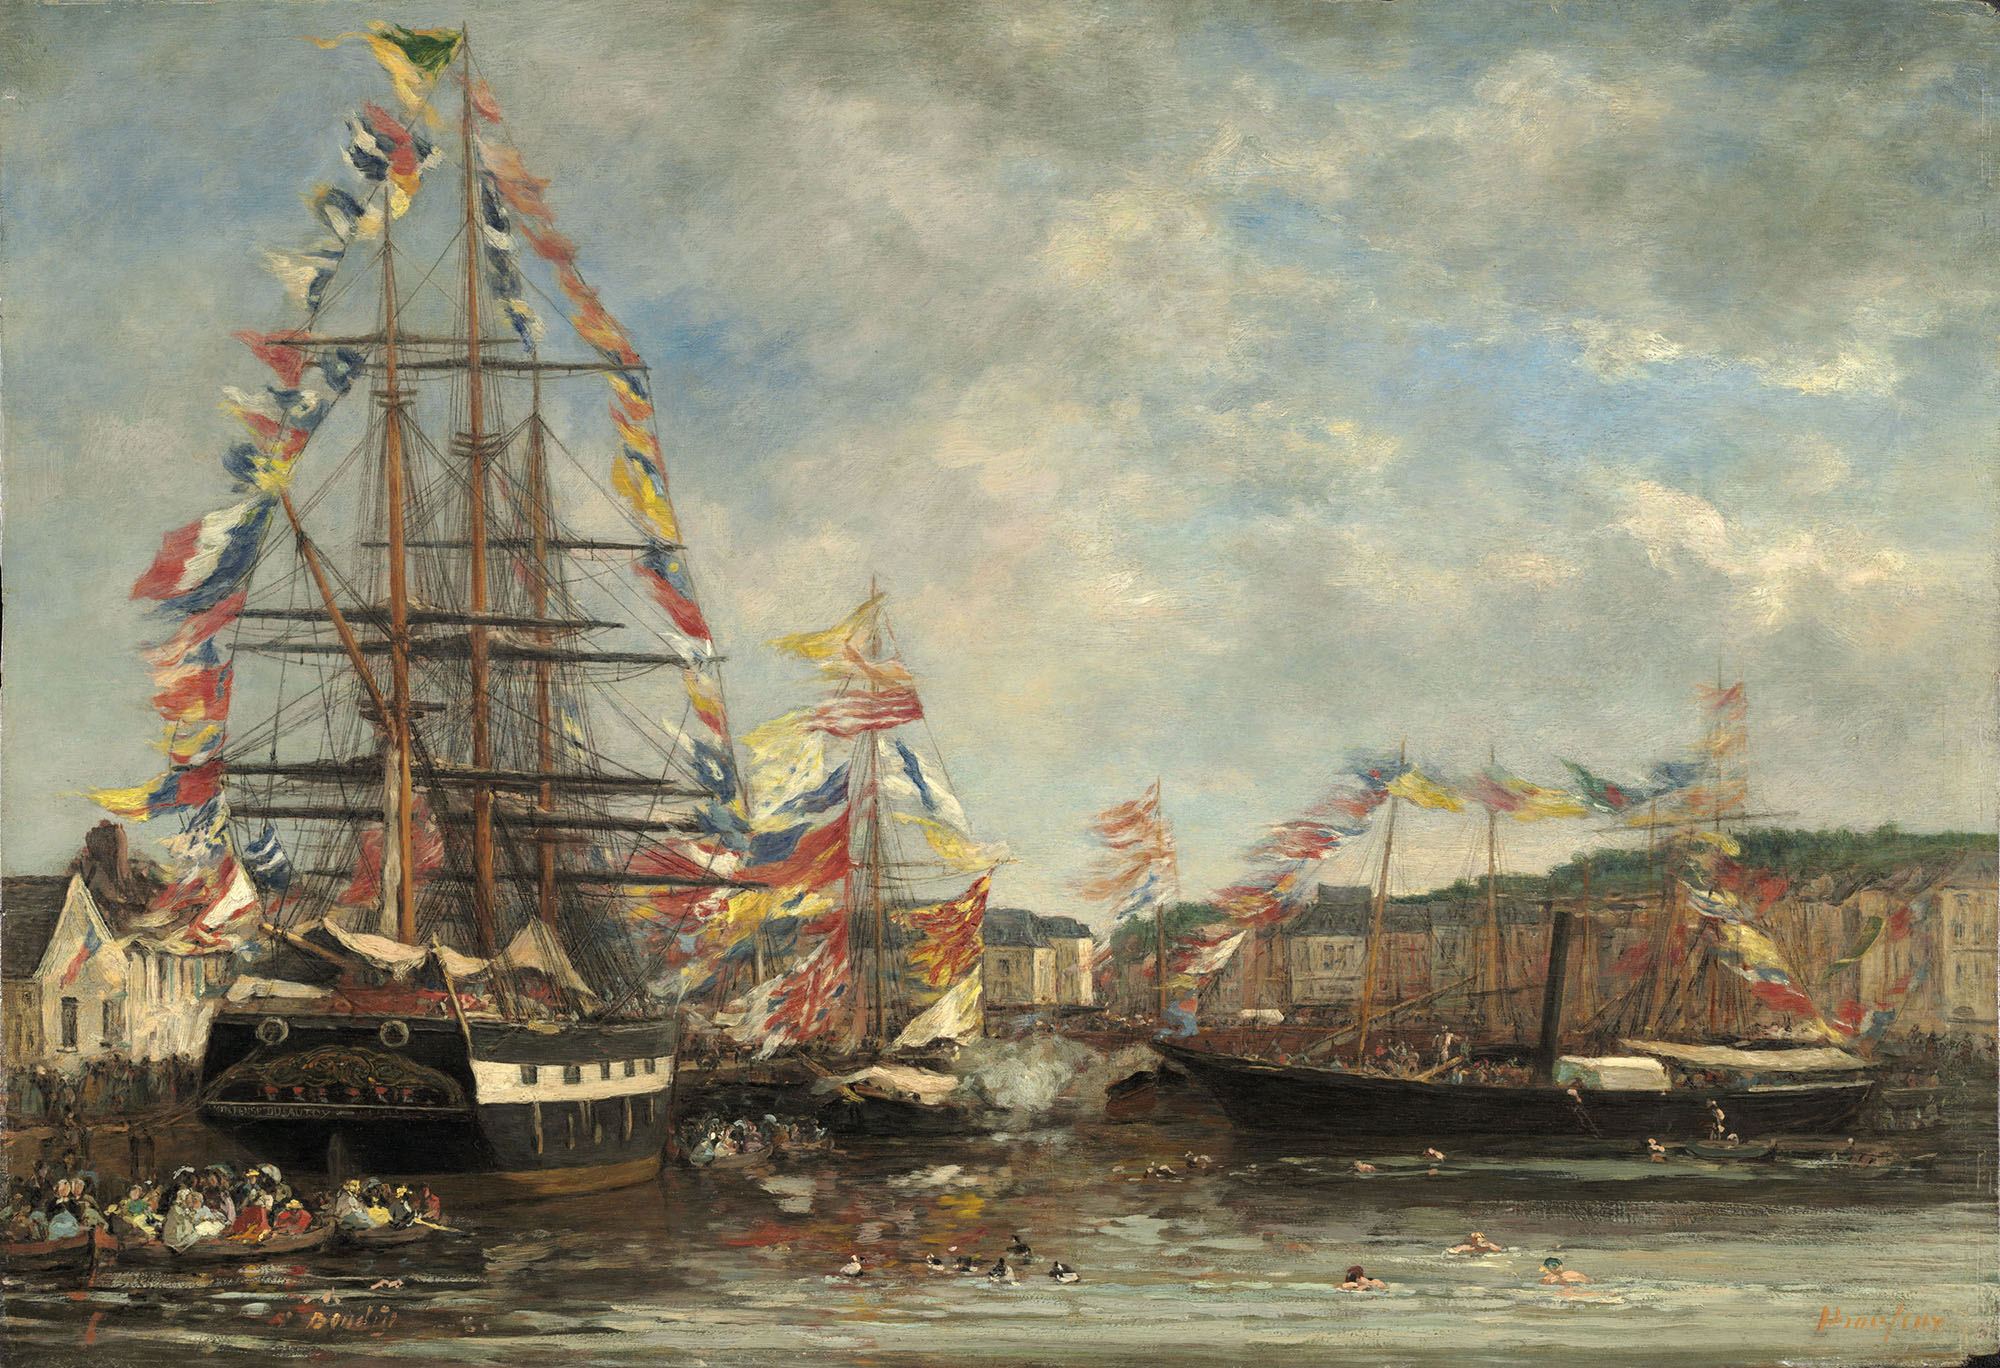 Эжен Буден. "Фестиваль в гавани города Онфлёр". 1858. Национальная галерея искусств, Вашингтон.